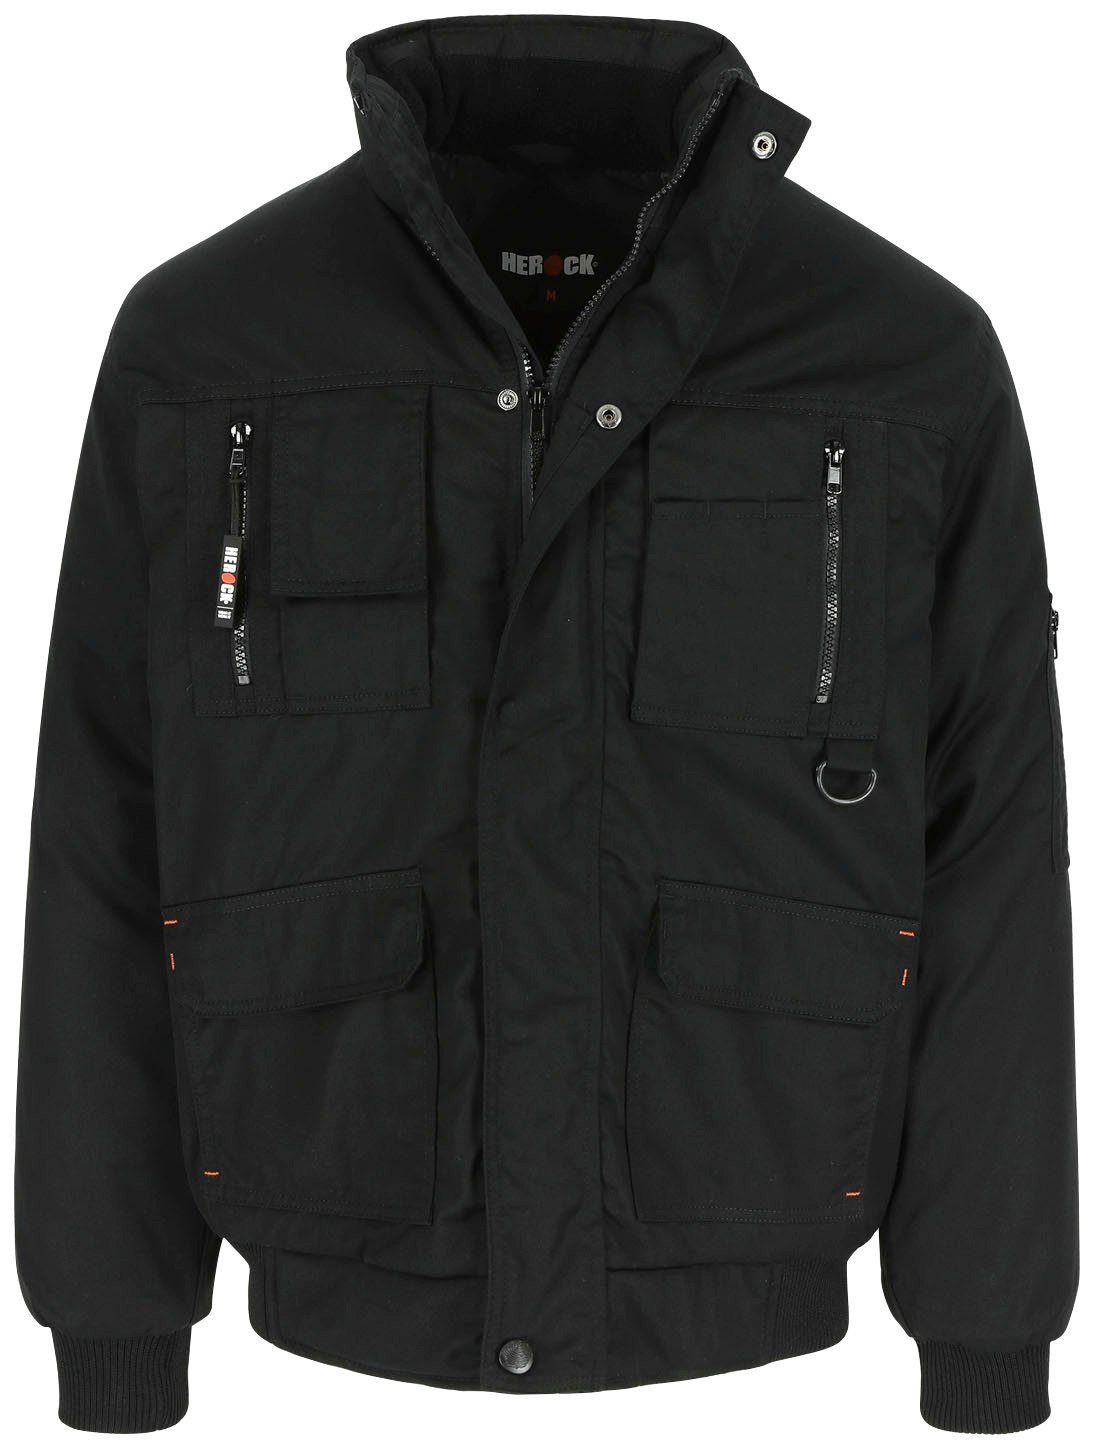 Herock Arbeitsjacke Typhon schwarz viele mit viele Jacke Taschen, robust, Wasserabweisend Fleece-Kragen, Farben